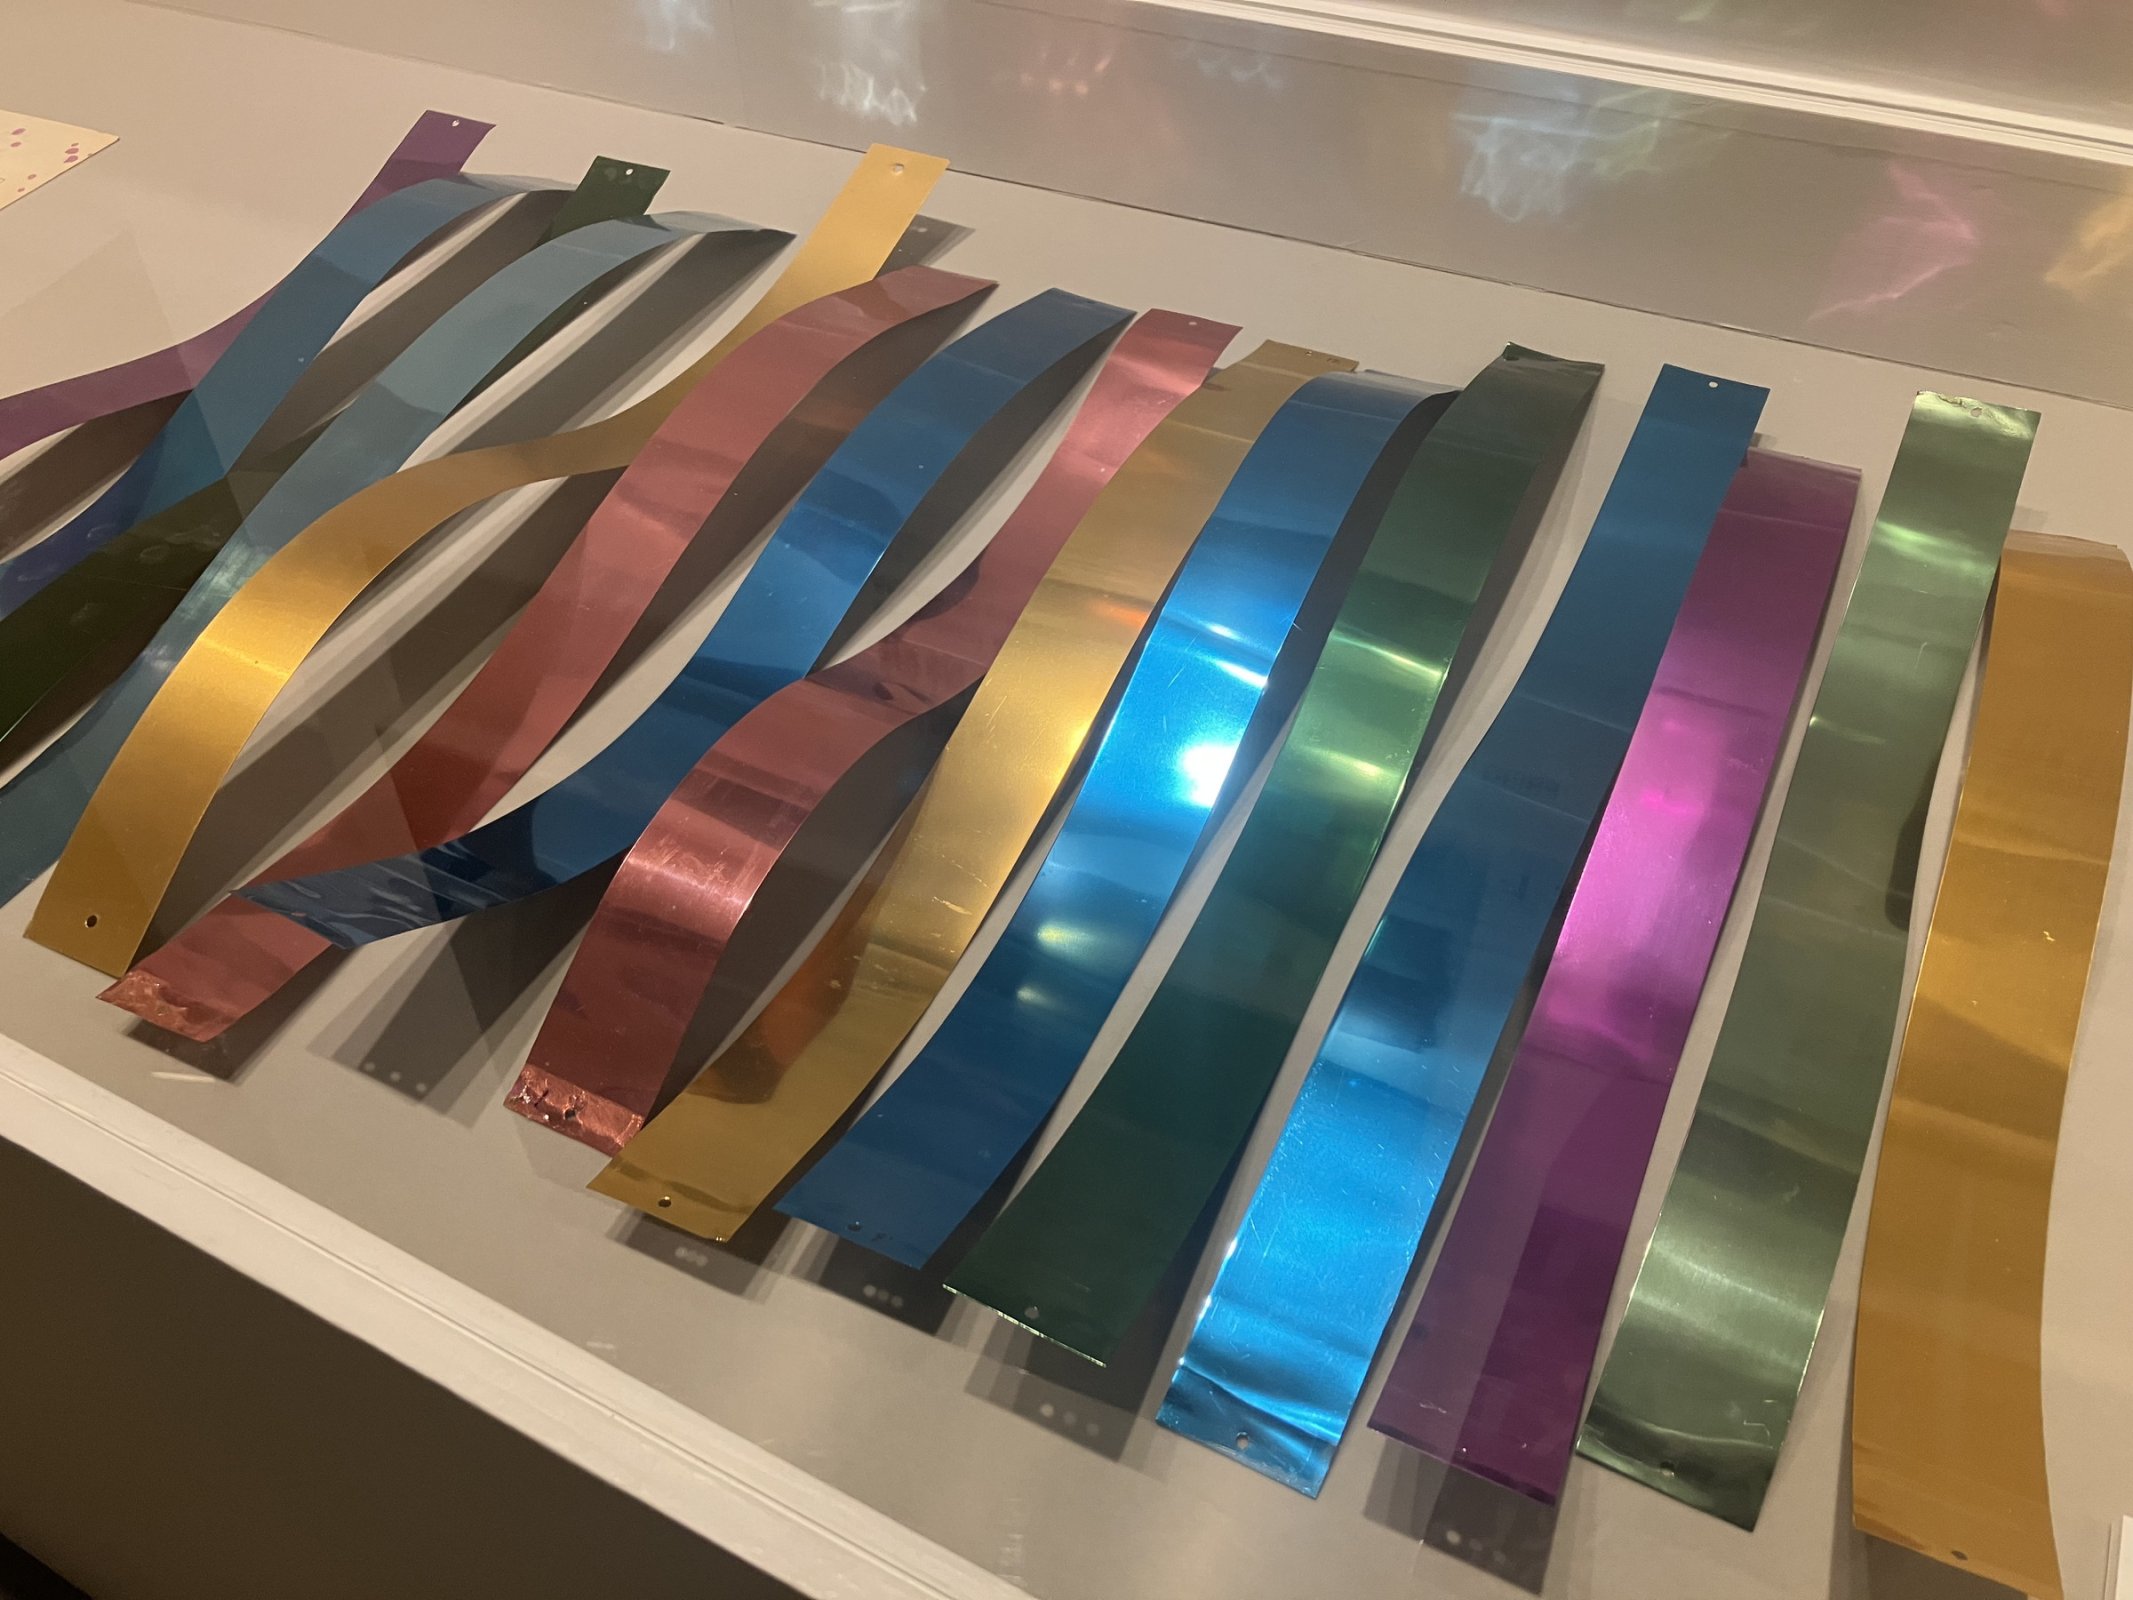 「聖徳大学」の緞帳「瑞光」で使用されている短冊状のアルミパーツの展示風景